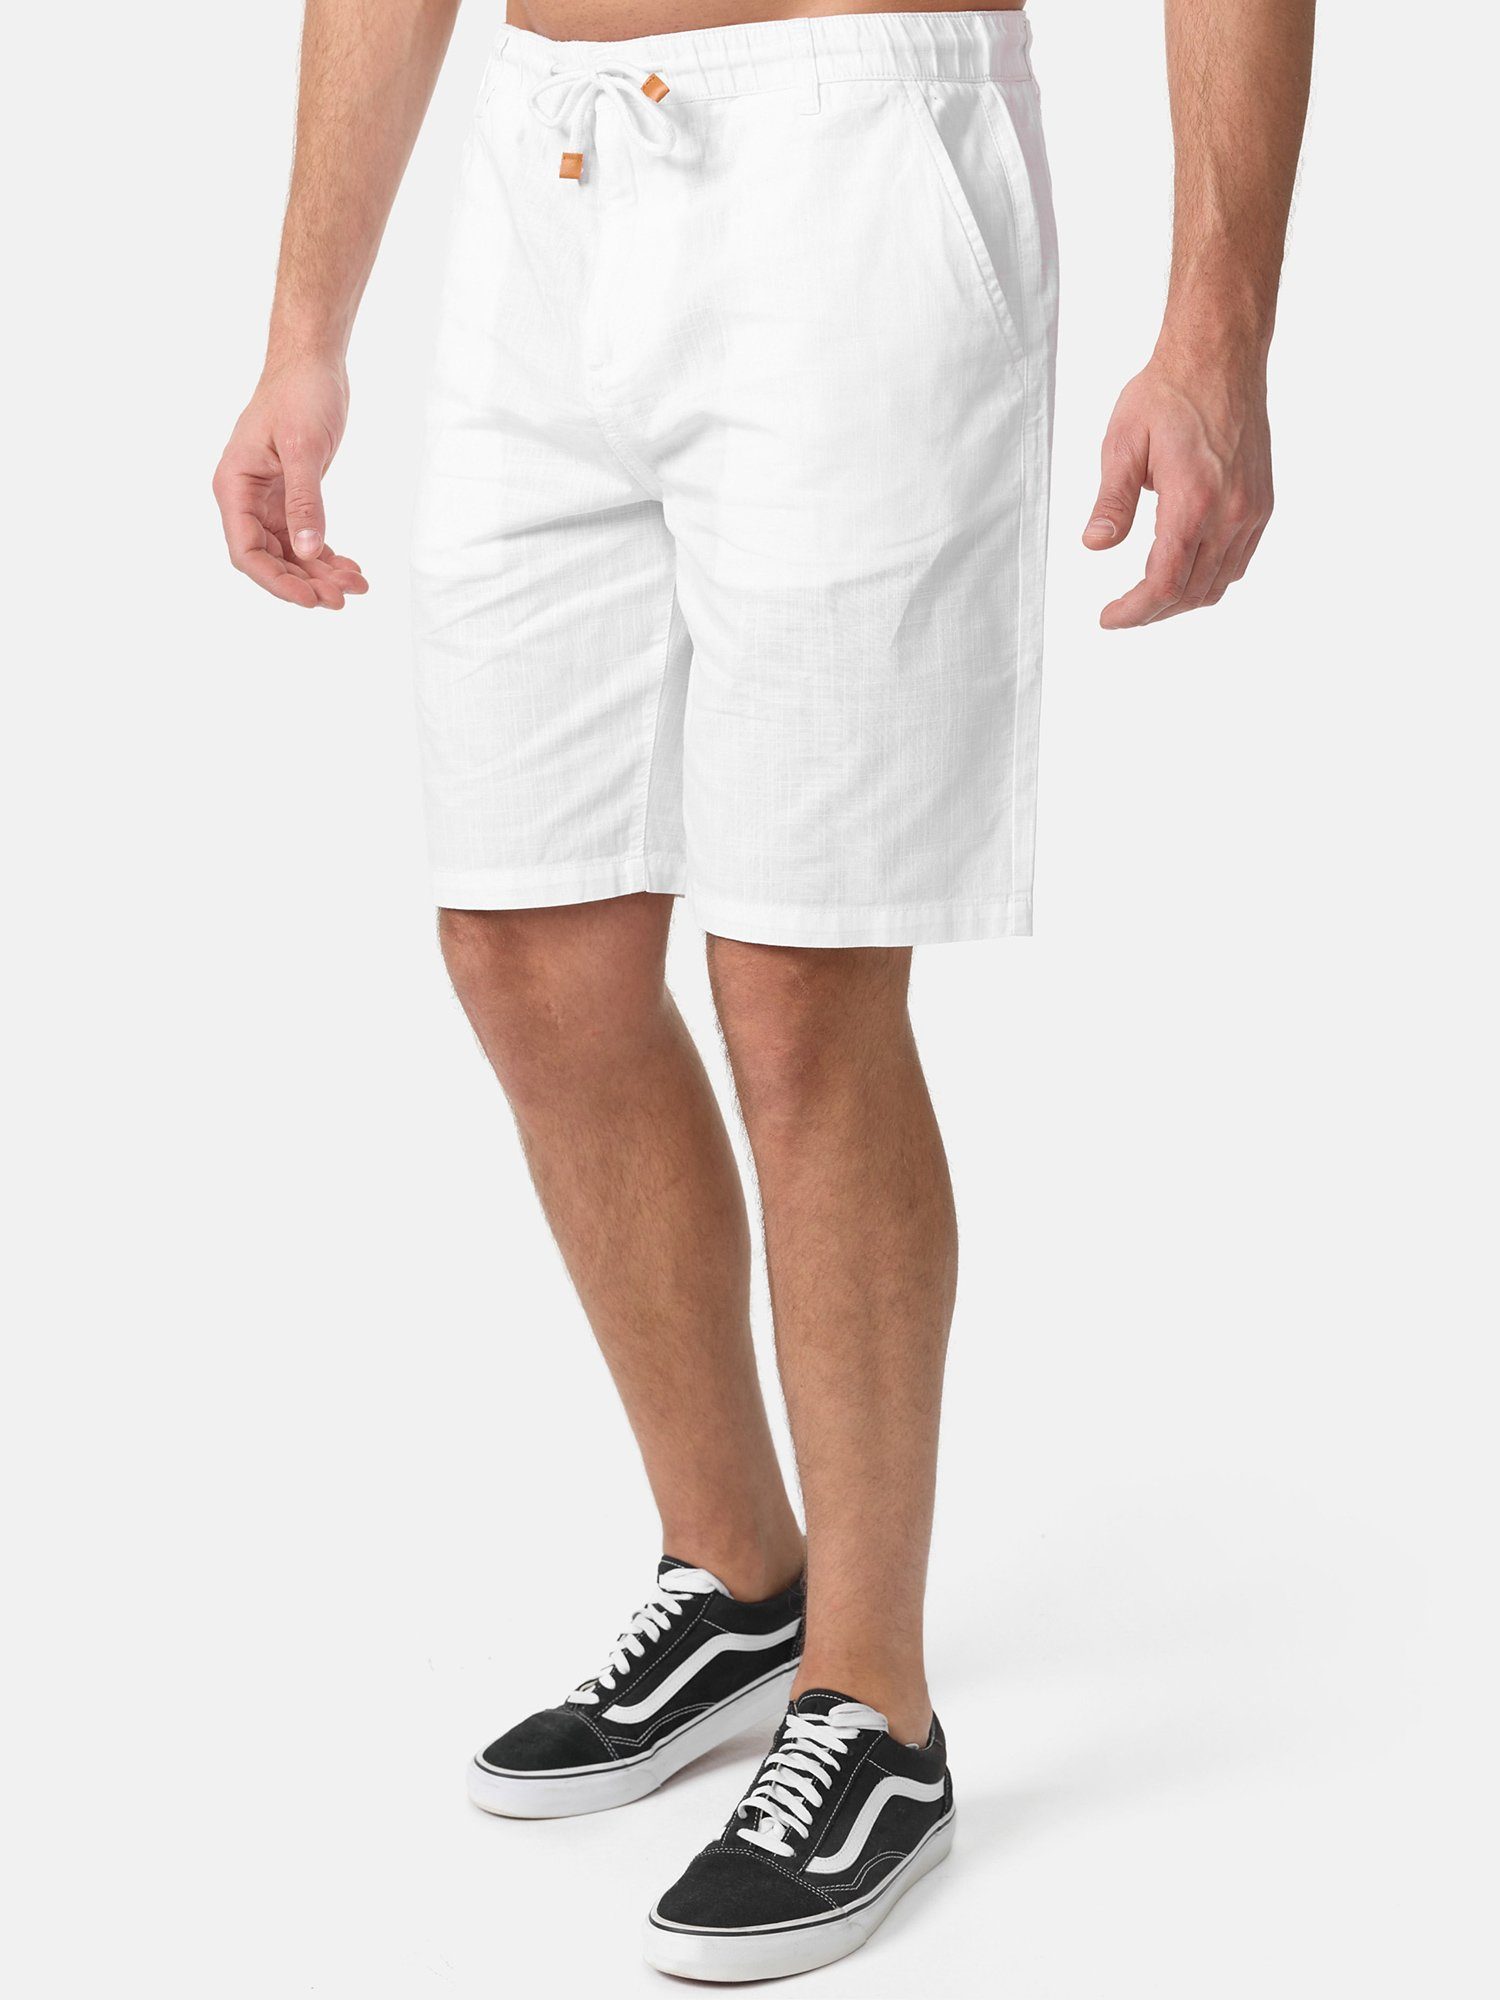 Hose in Leinen-Optik Tazzio Shorts weiß moderne & kurze A205 zeitlose